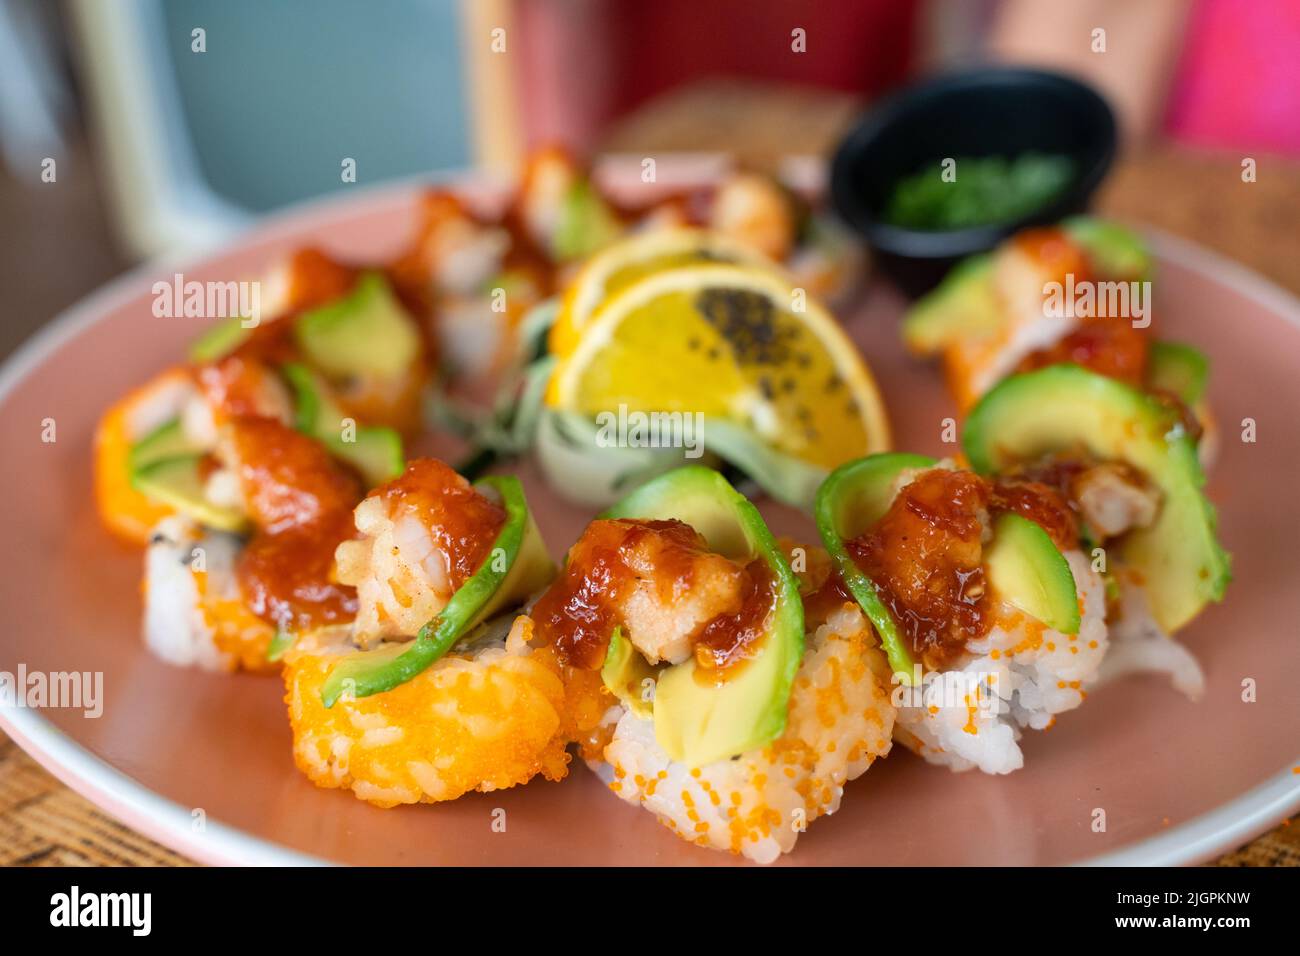 Kalifornischer Sushi-Rollteller mit Avocado, Garnelen und würziger Sauce darauf. Gourmet Food Restaurant Konzept Stockfoto